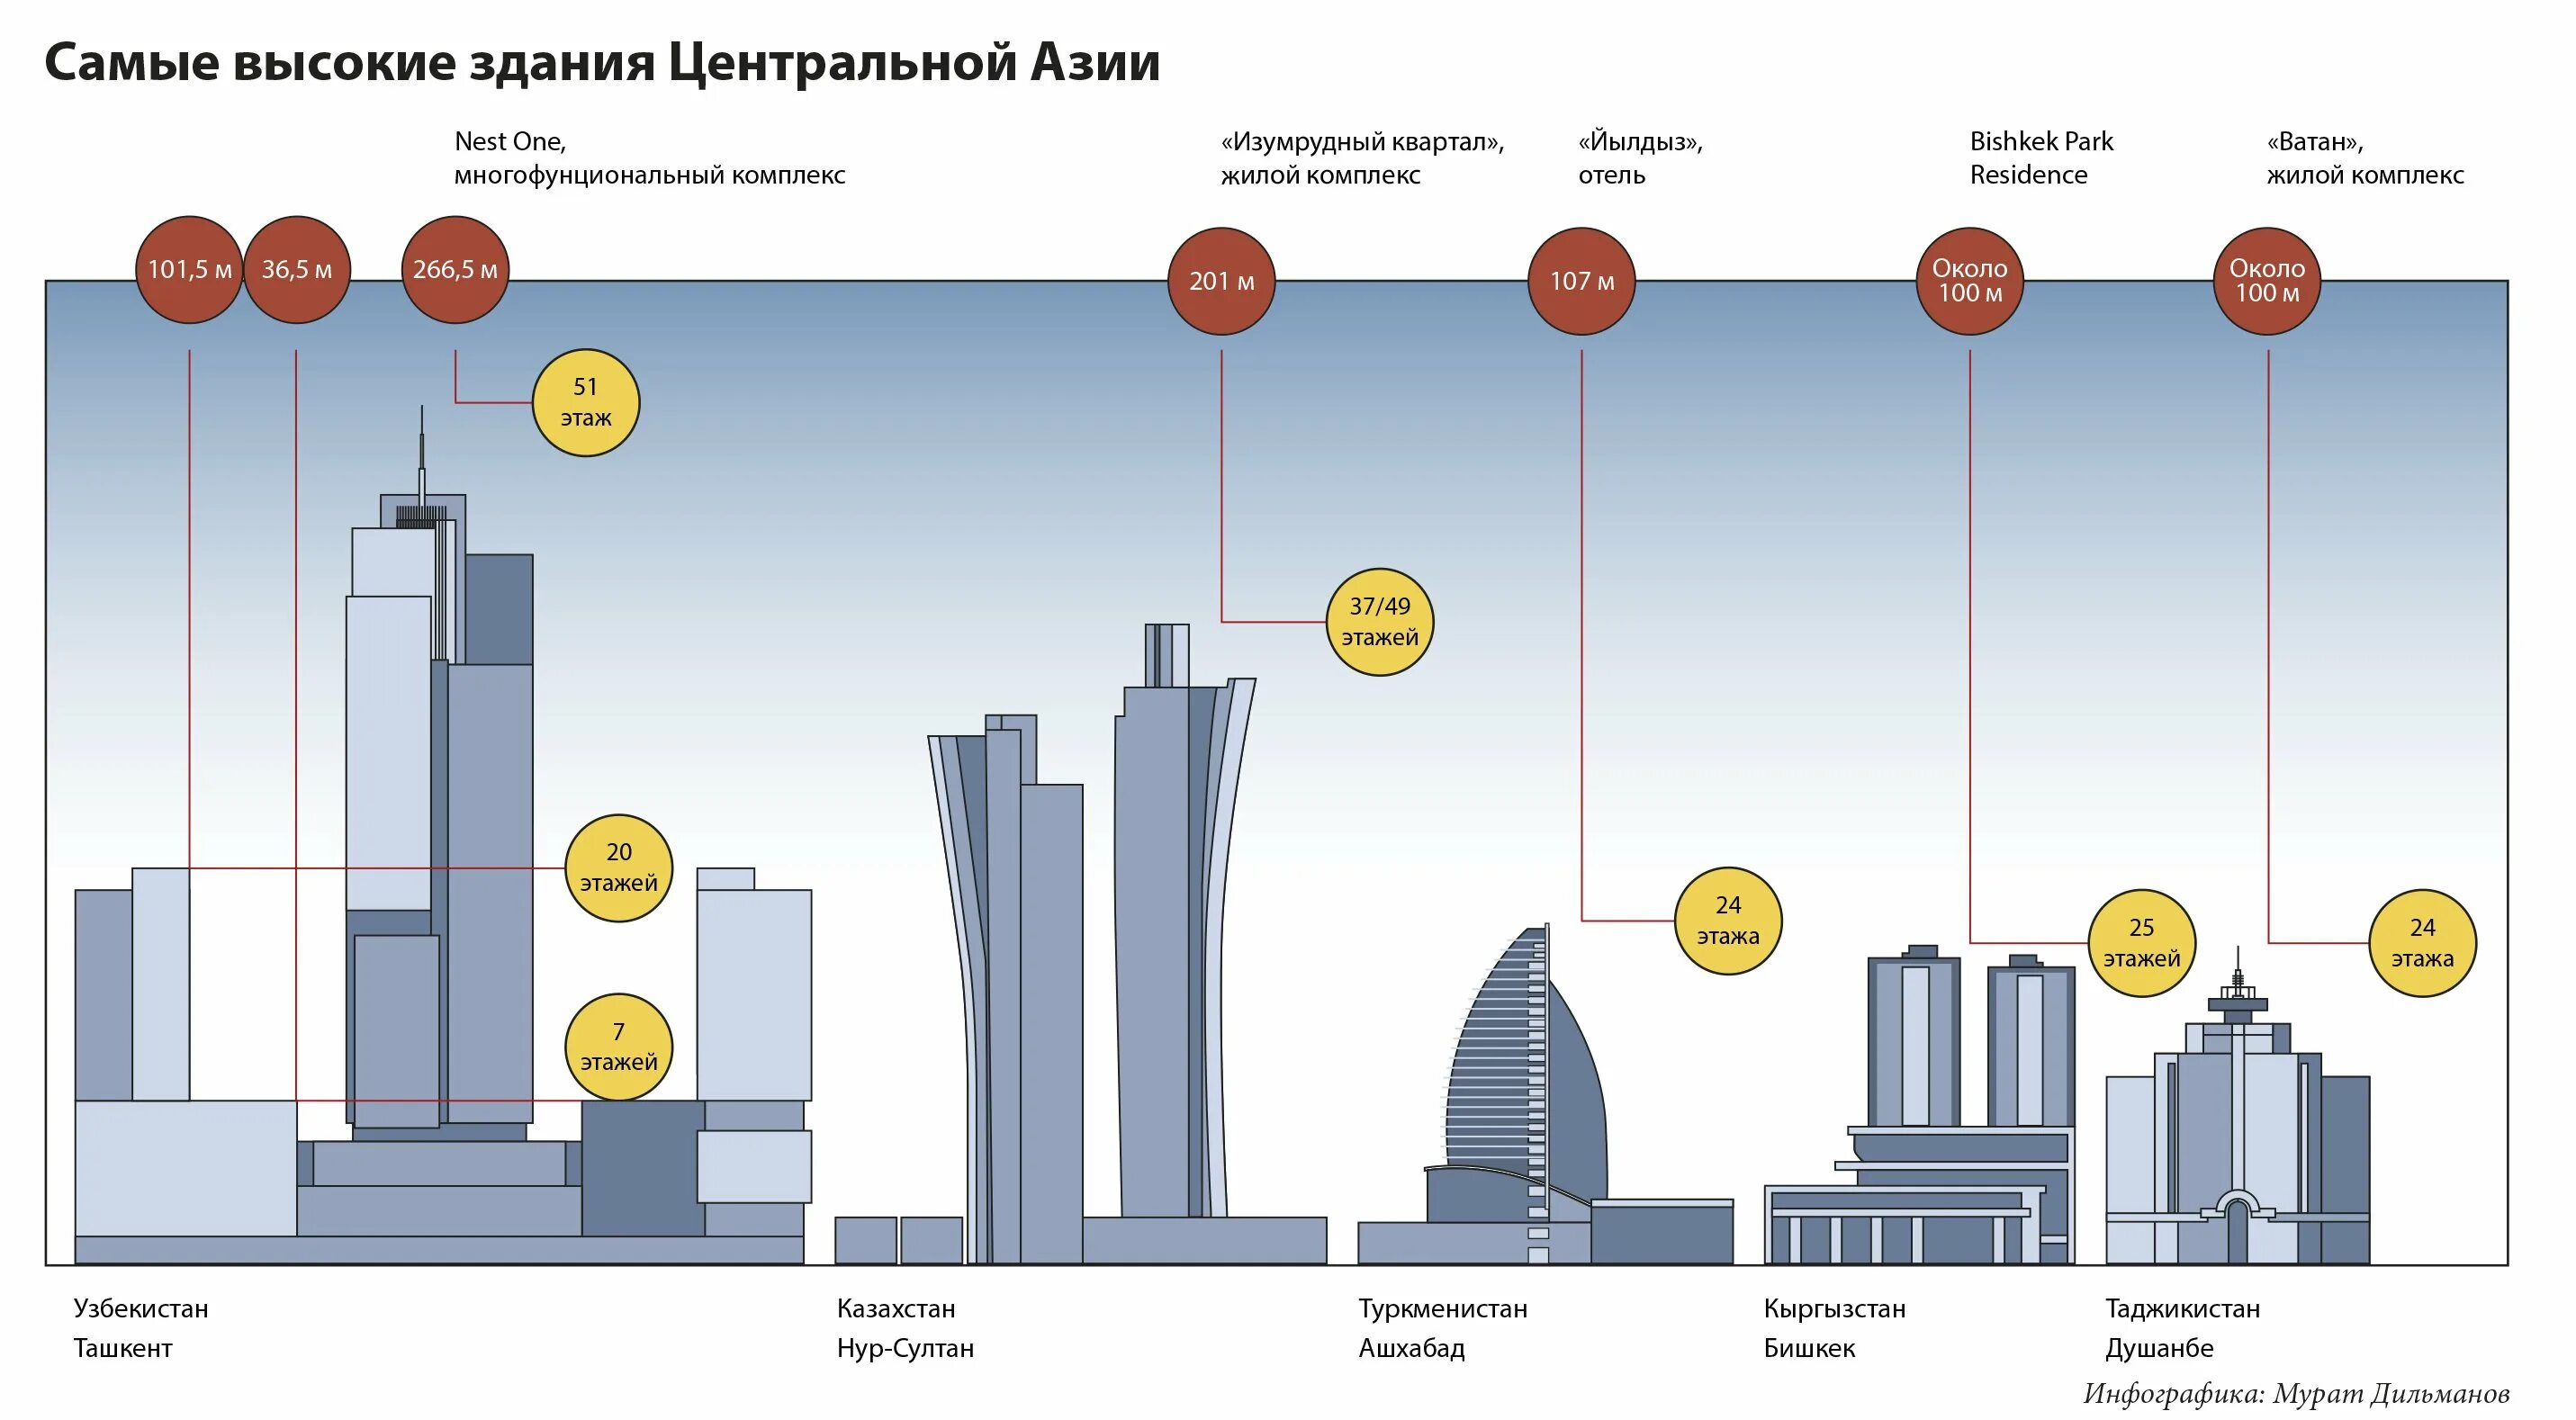 Ташкент Сити самое высокое здание. Ташкент Сити самый высокий этаж. Высота Nest one Ташкент. Самый высокий небоскрёб в Ташкенте.